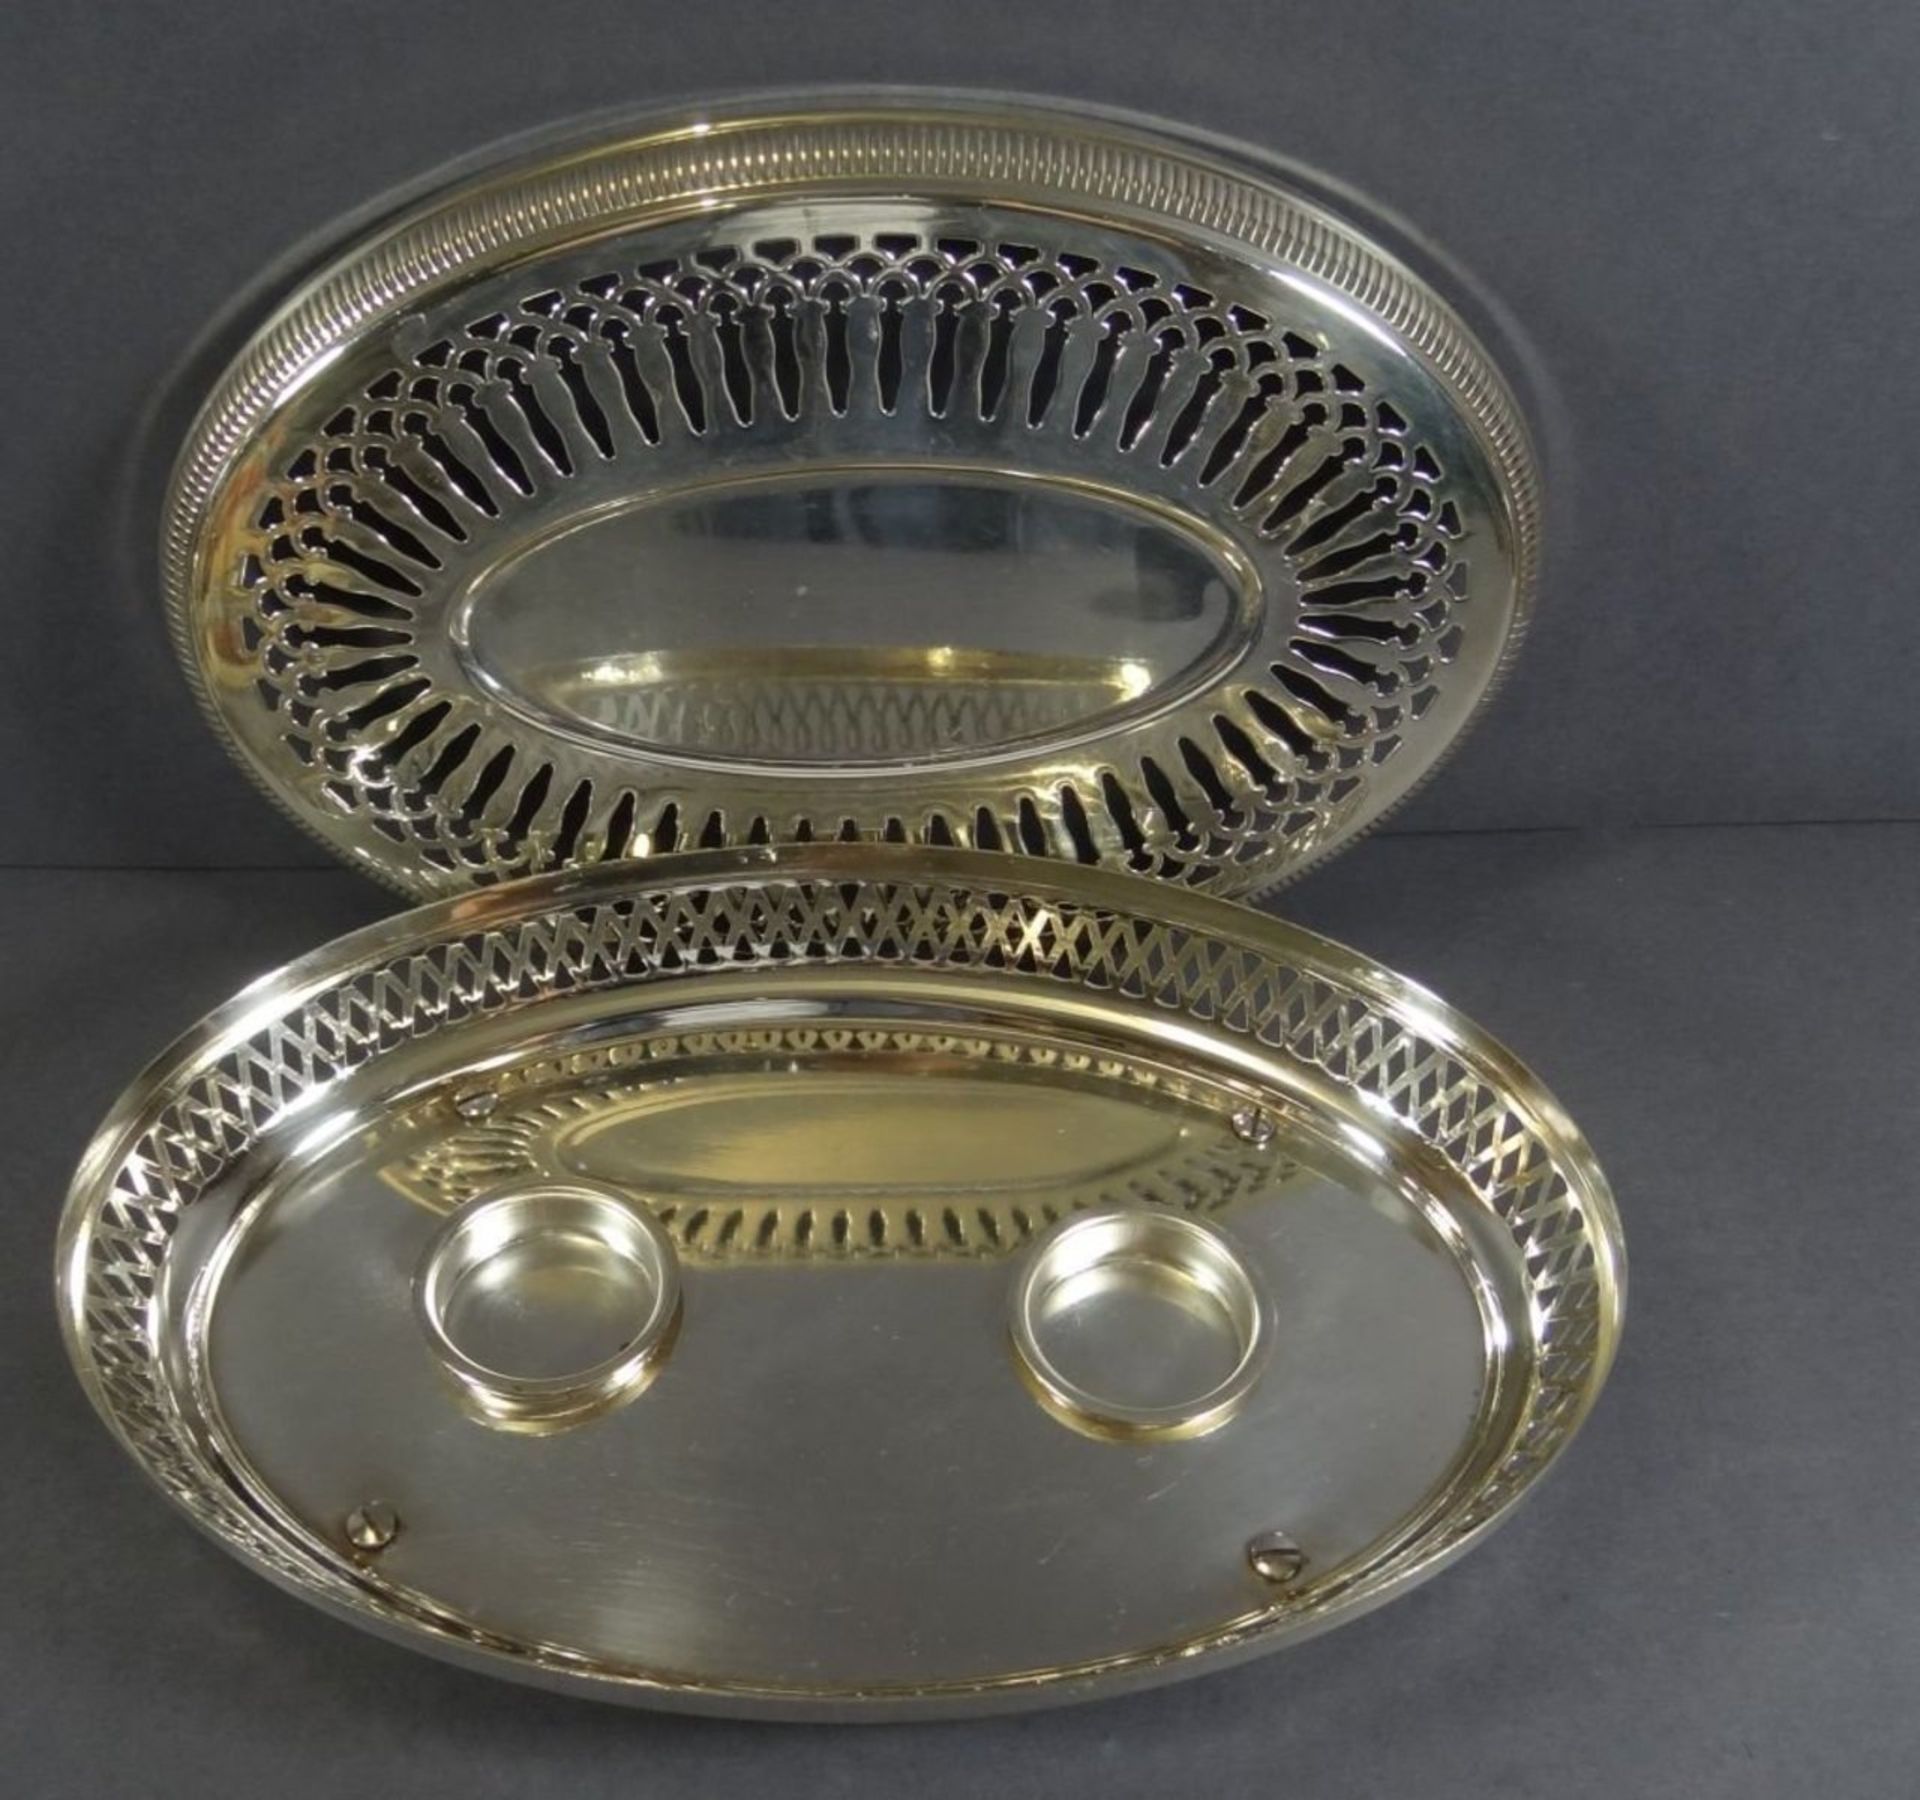 ovale Warmhaltschale mit Teelichthaltern, plated, H-6 cm, 27x17 cm - Bild 3 aus 7